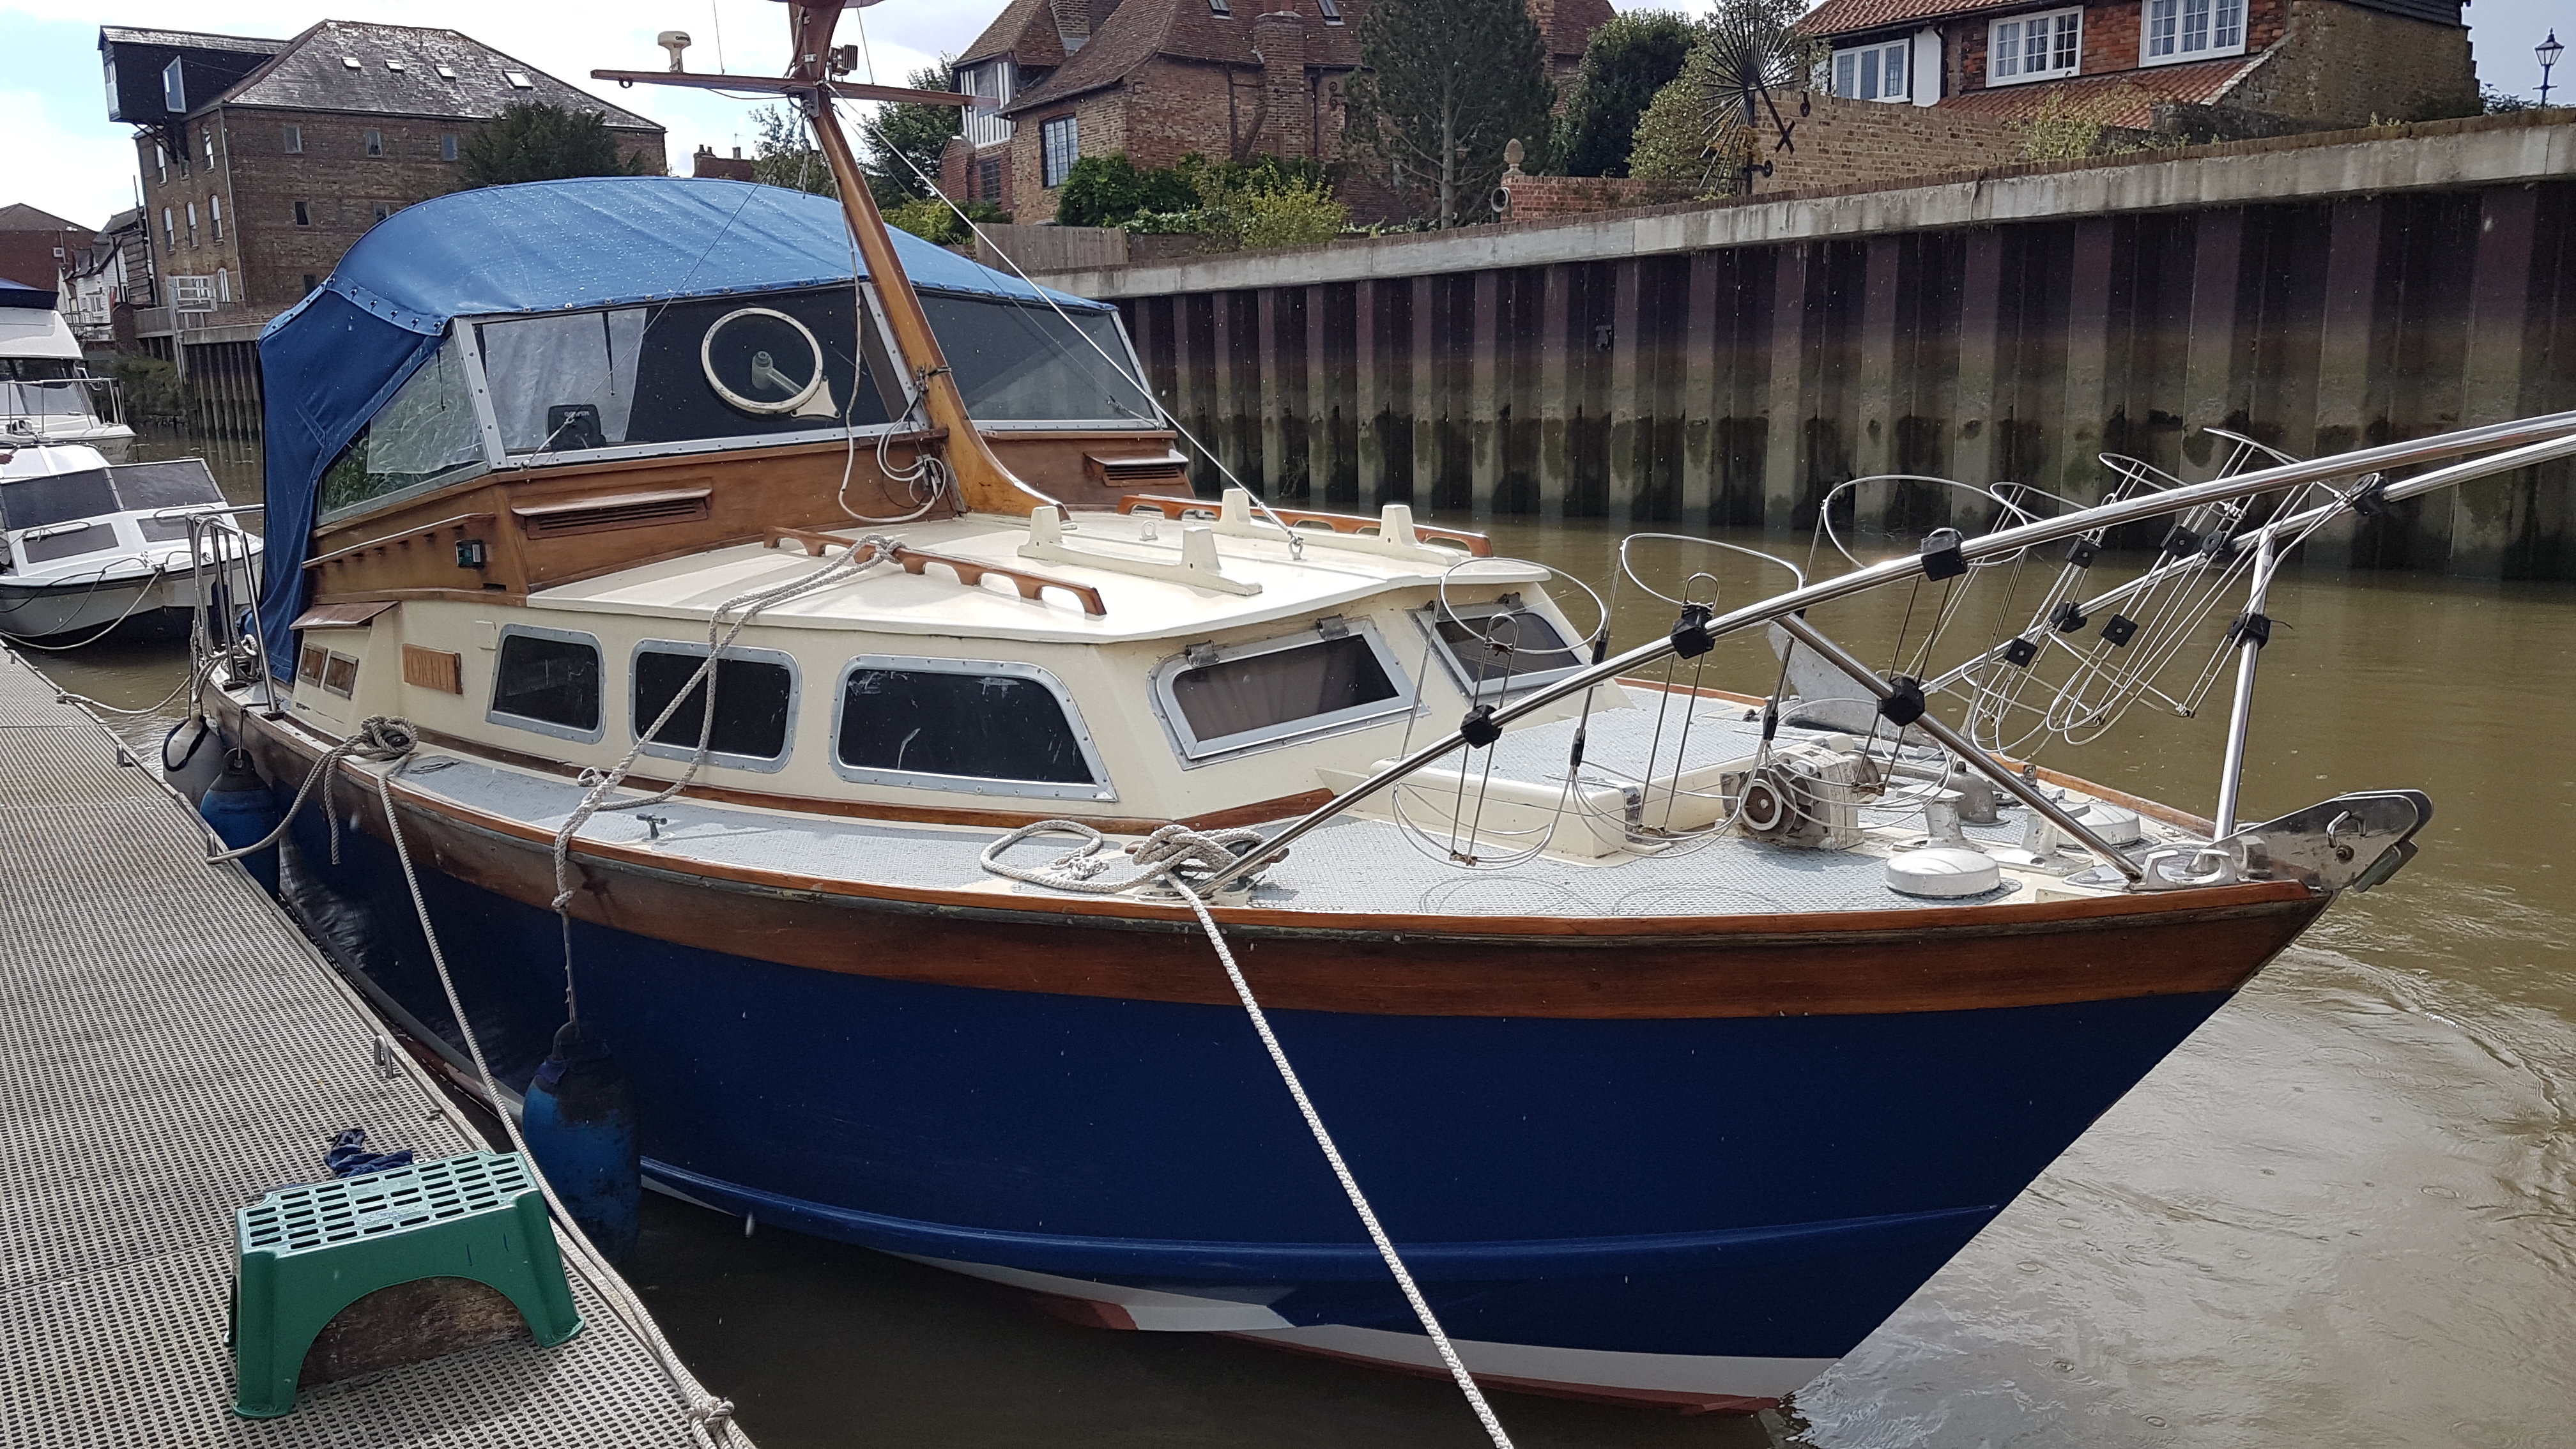 uk motorboats for sale